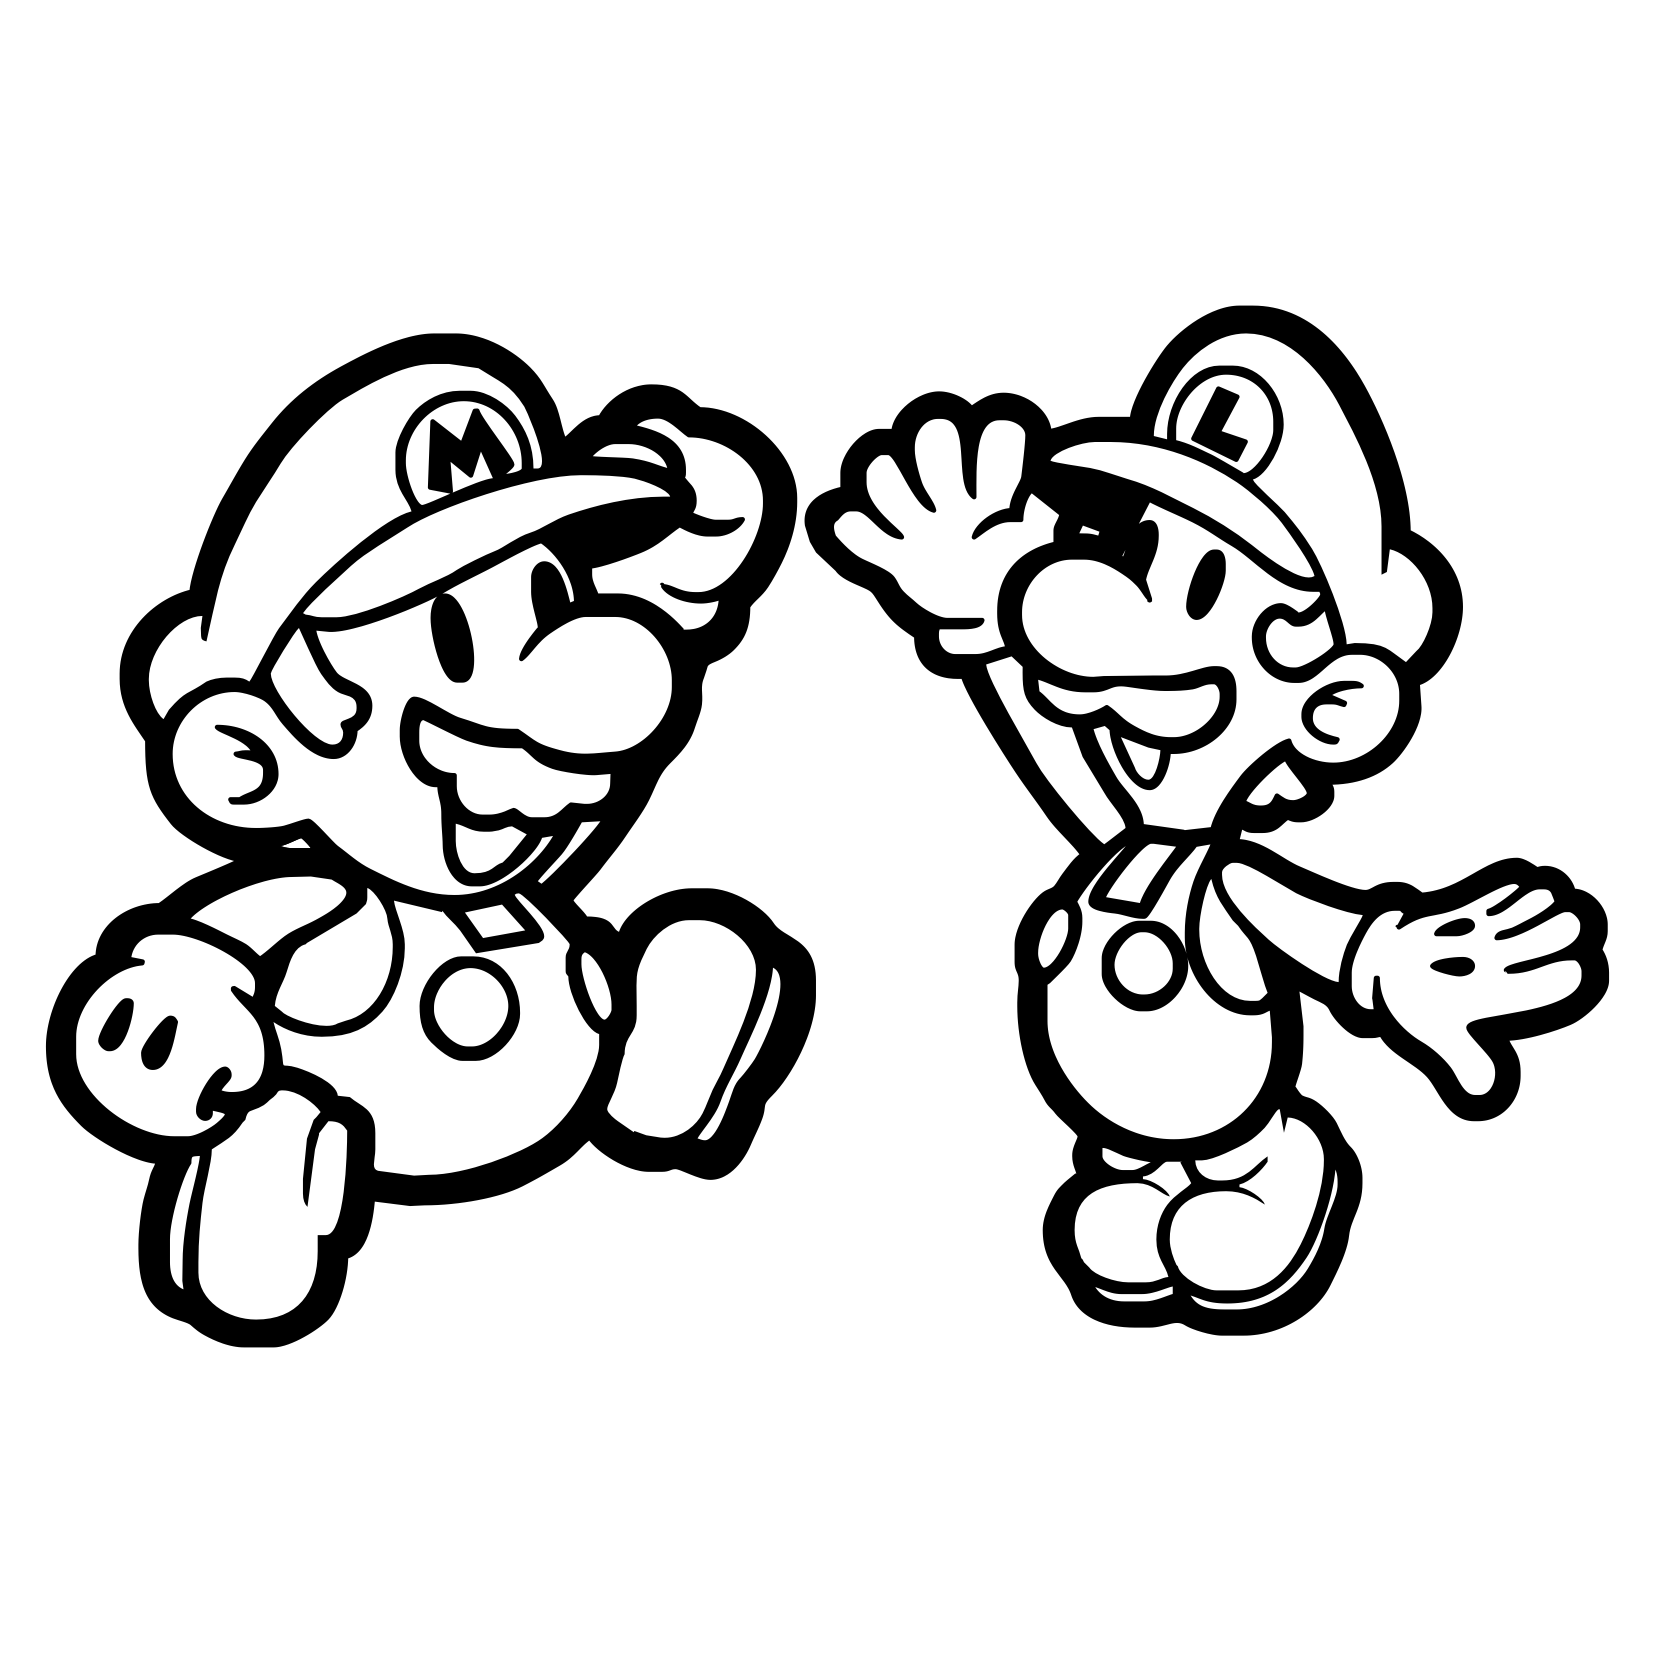 Mario and Luigi - Mario Bros Kids Coloring Pages